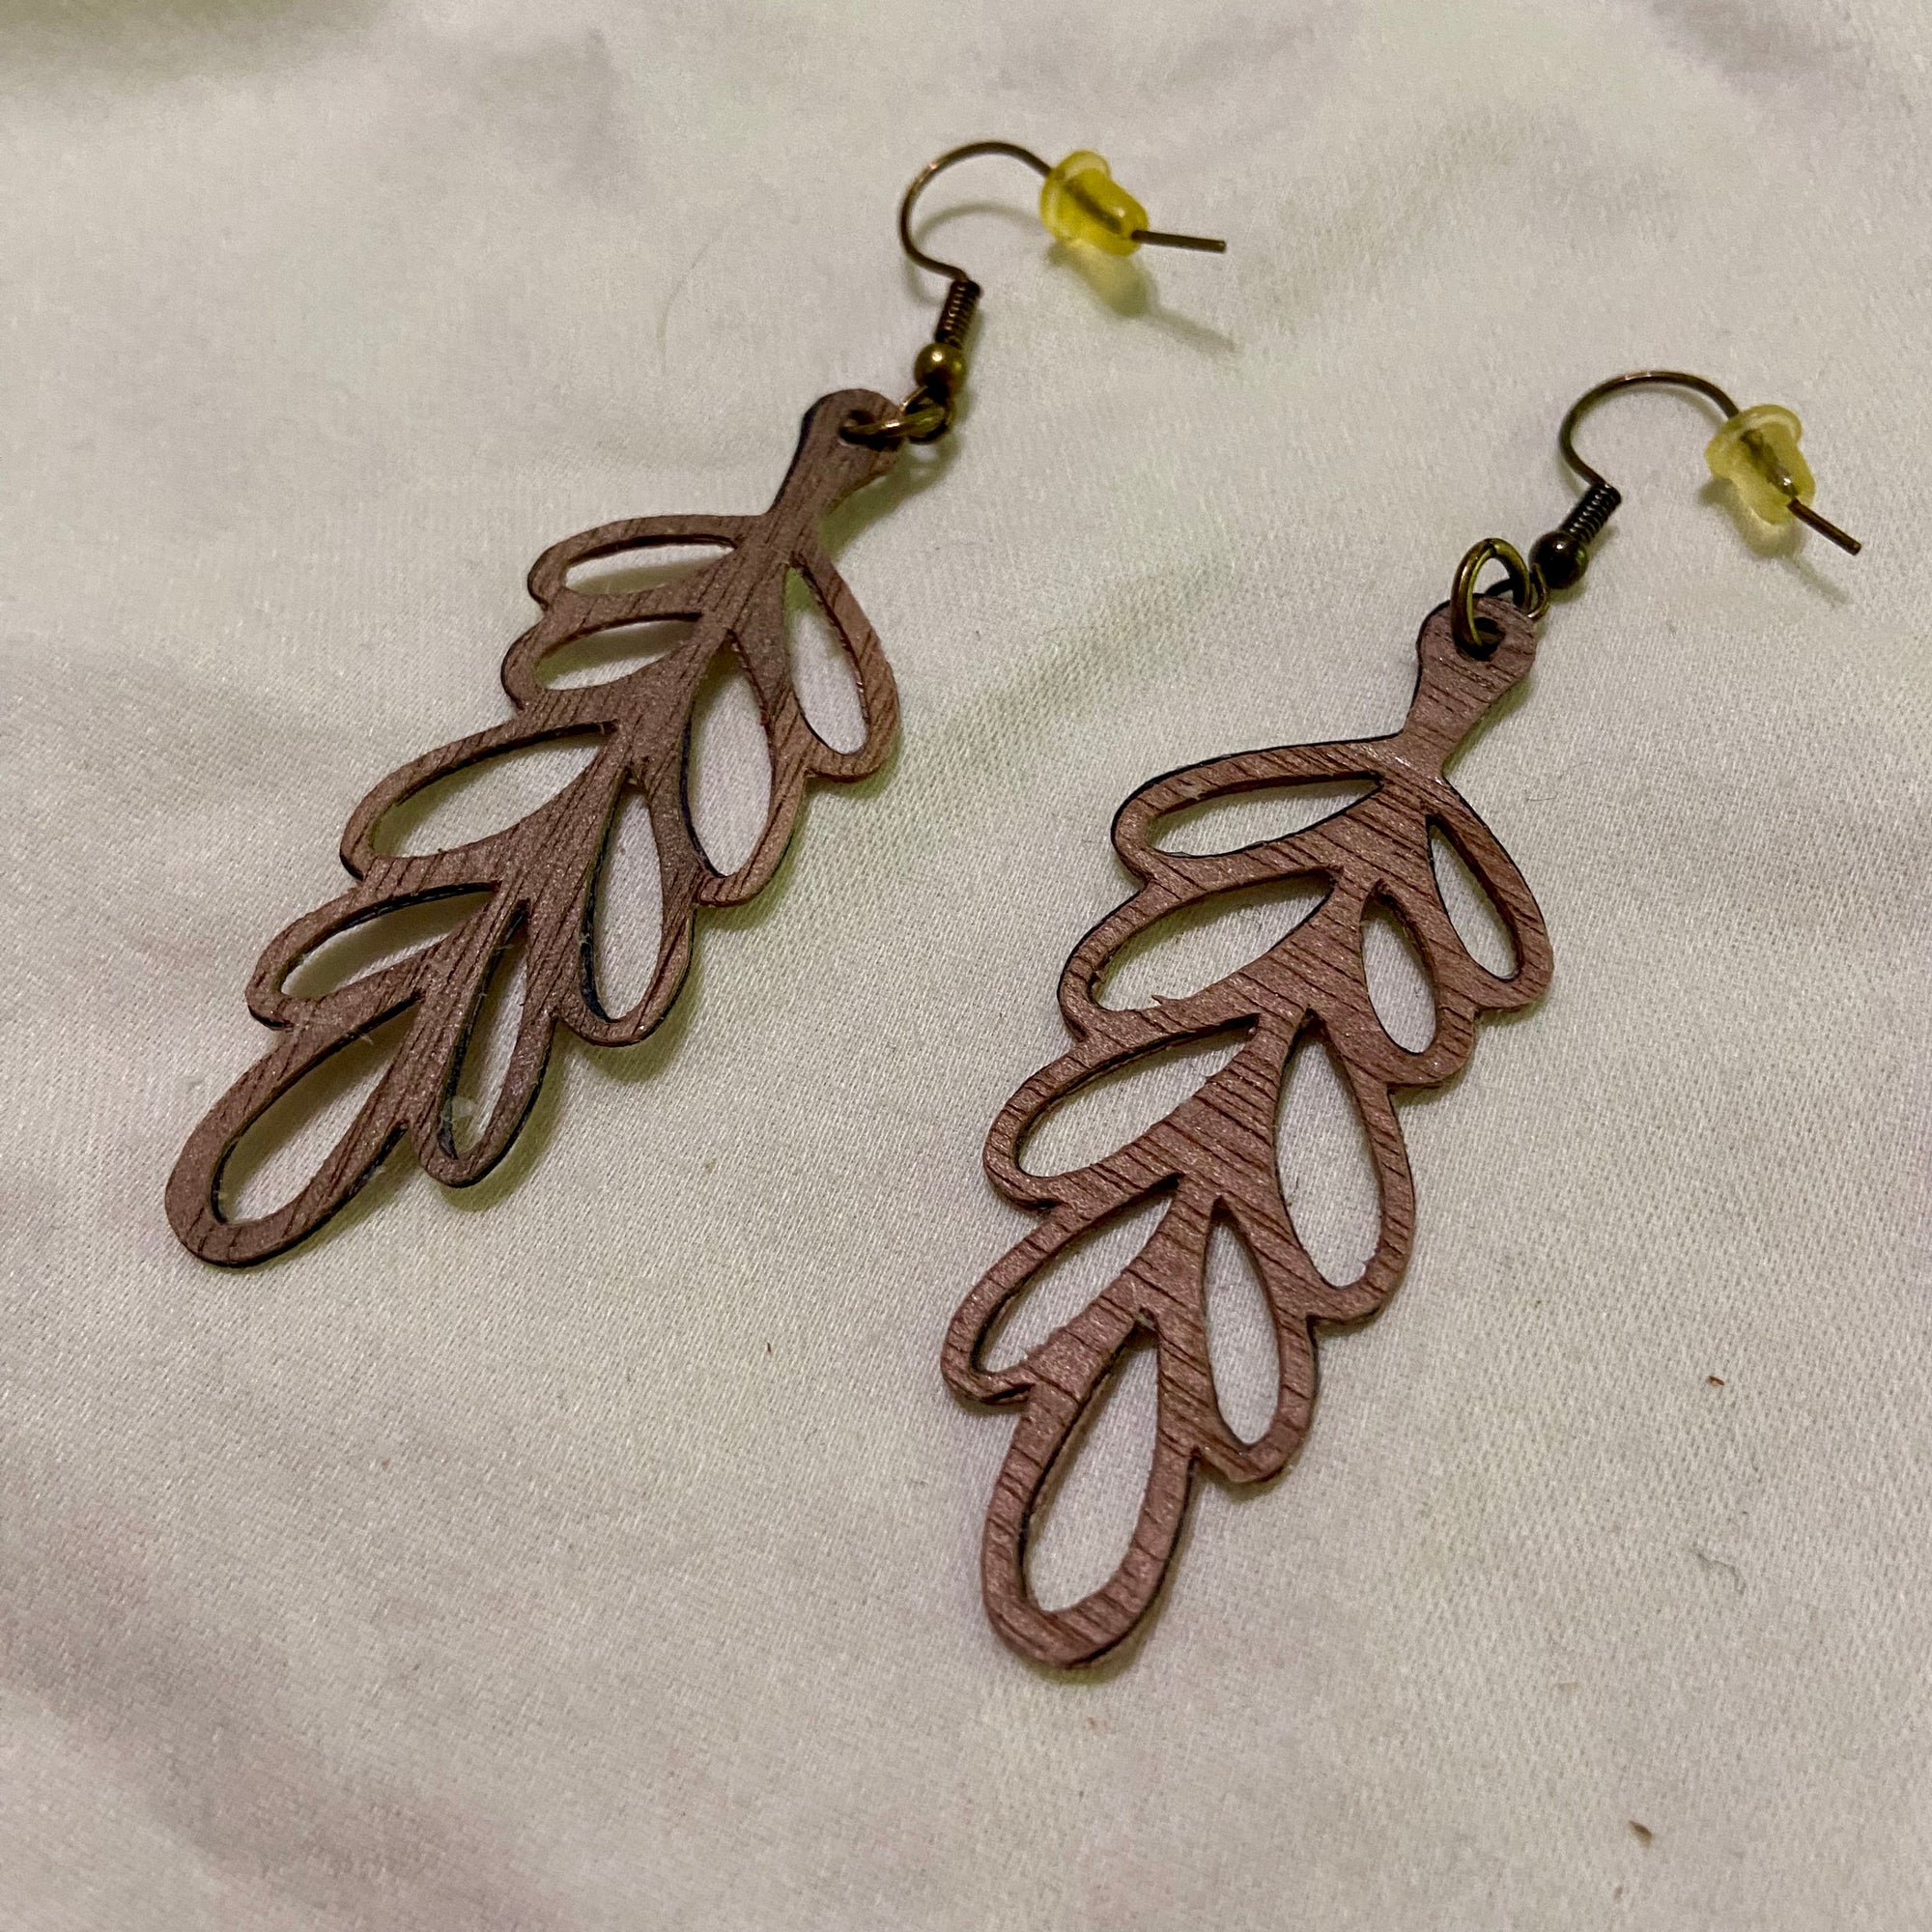 B. Light Earrings - Brown Wood Loopy Earrings